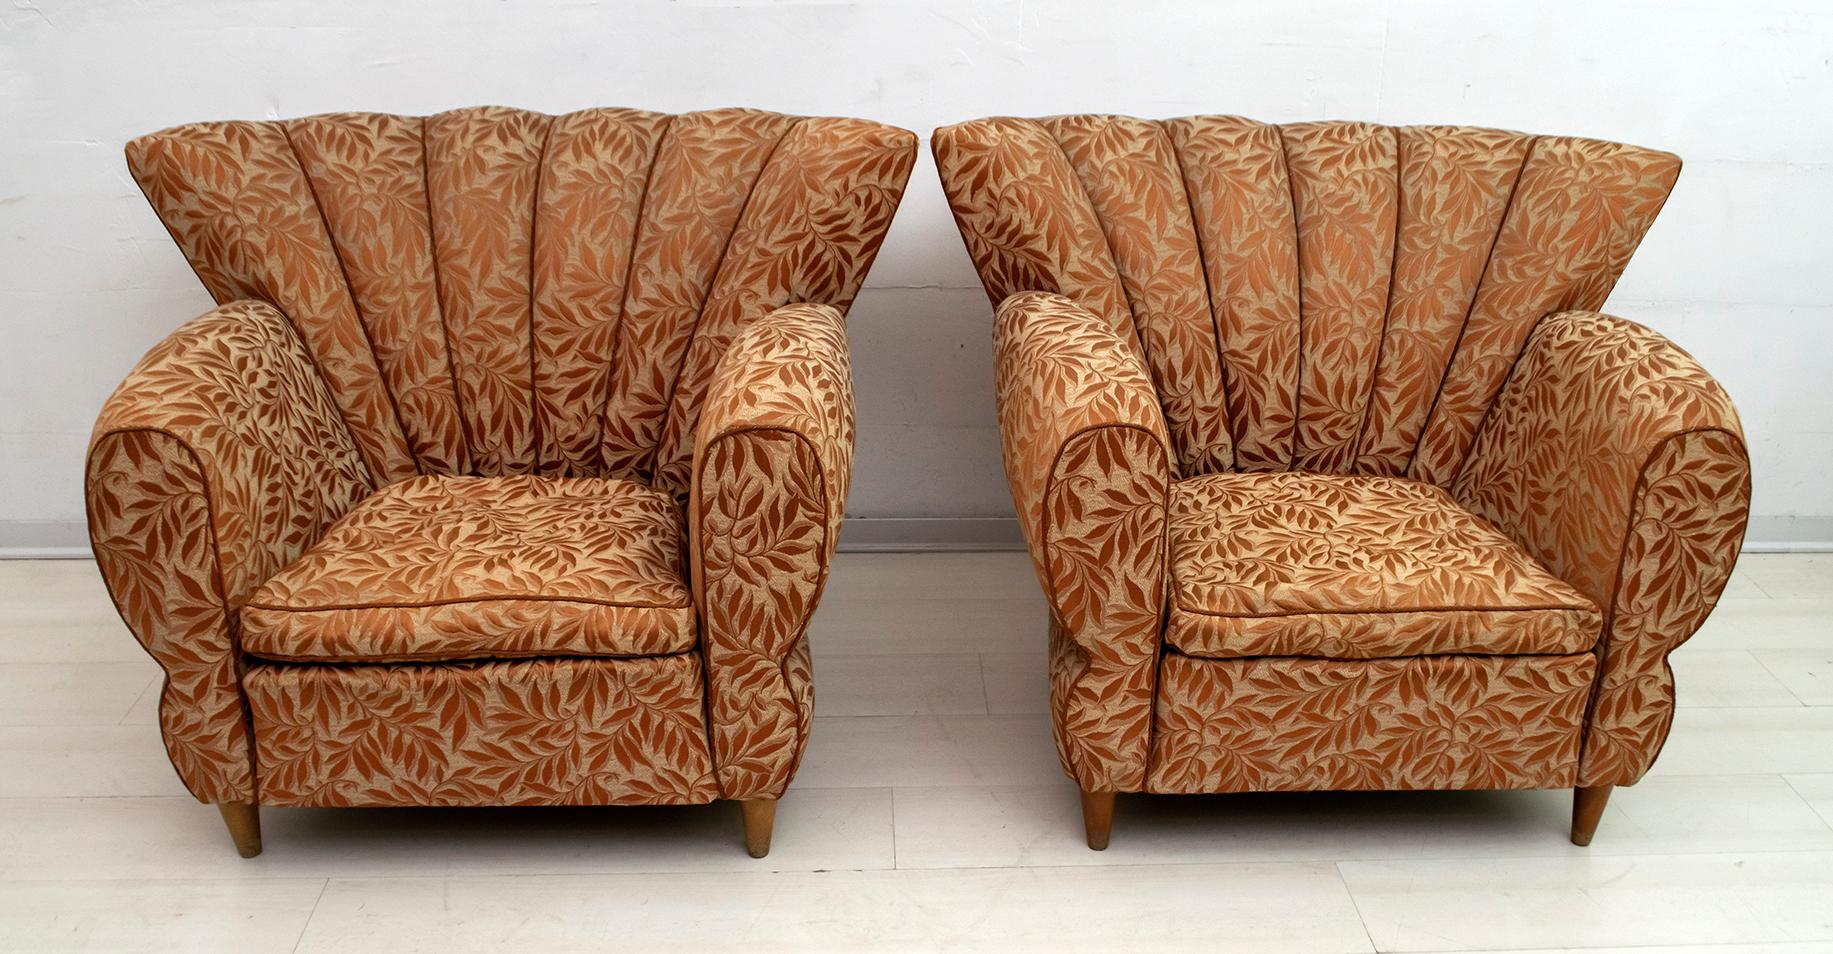 Besonderes Paar von Sesseln, die dem berühmten Architekten Guglielmo Ulrich zugeschrieben werden, die Polsterung ist original aus der Zeit, aber Ersatz wird empfohlen. Produktion aus den 1940er Jahren im Art-déco-Stil.

 